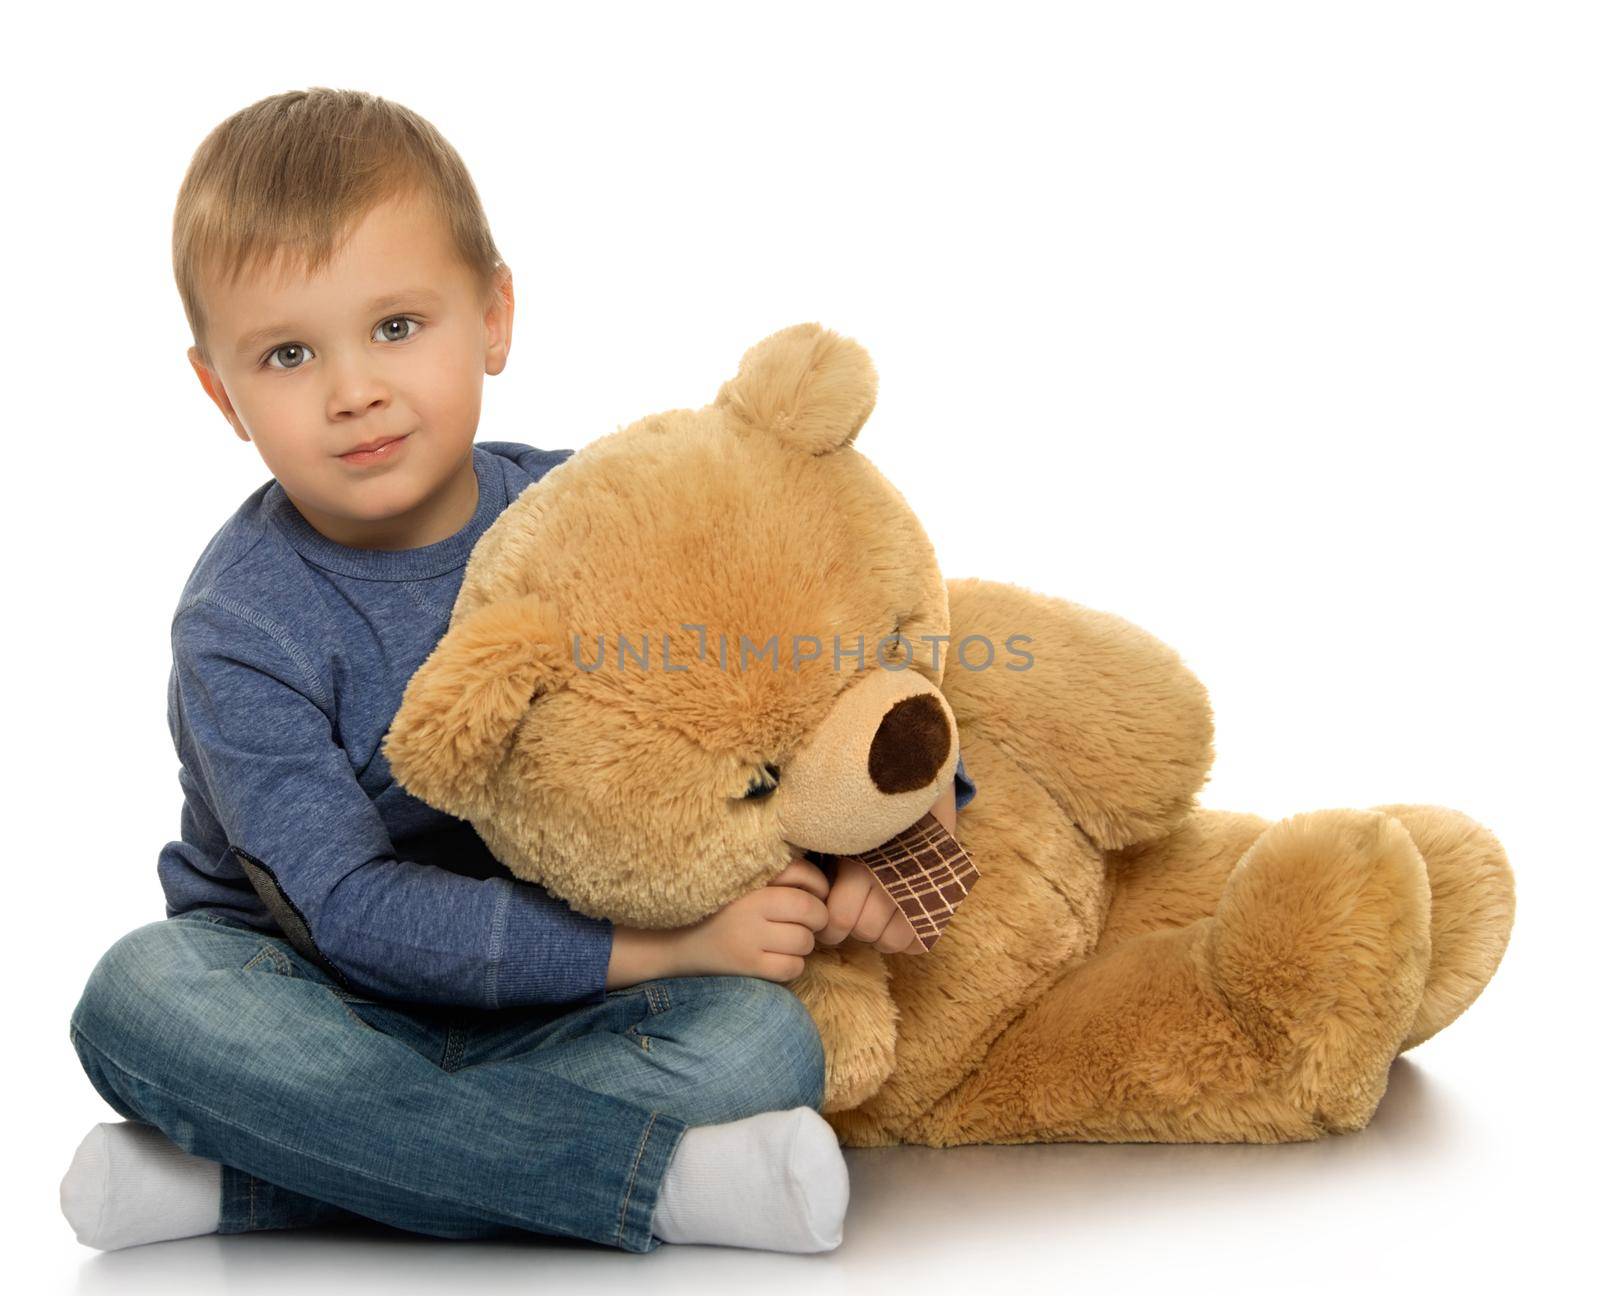 Boy with a Teddy bear by kolesnikov_studio